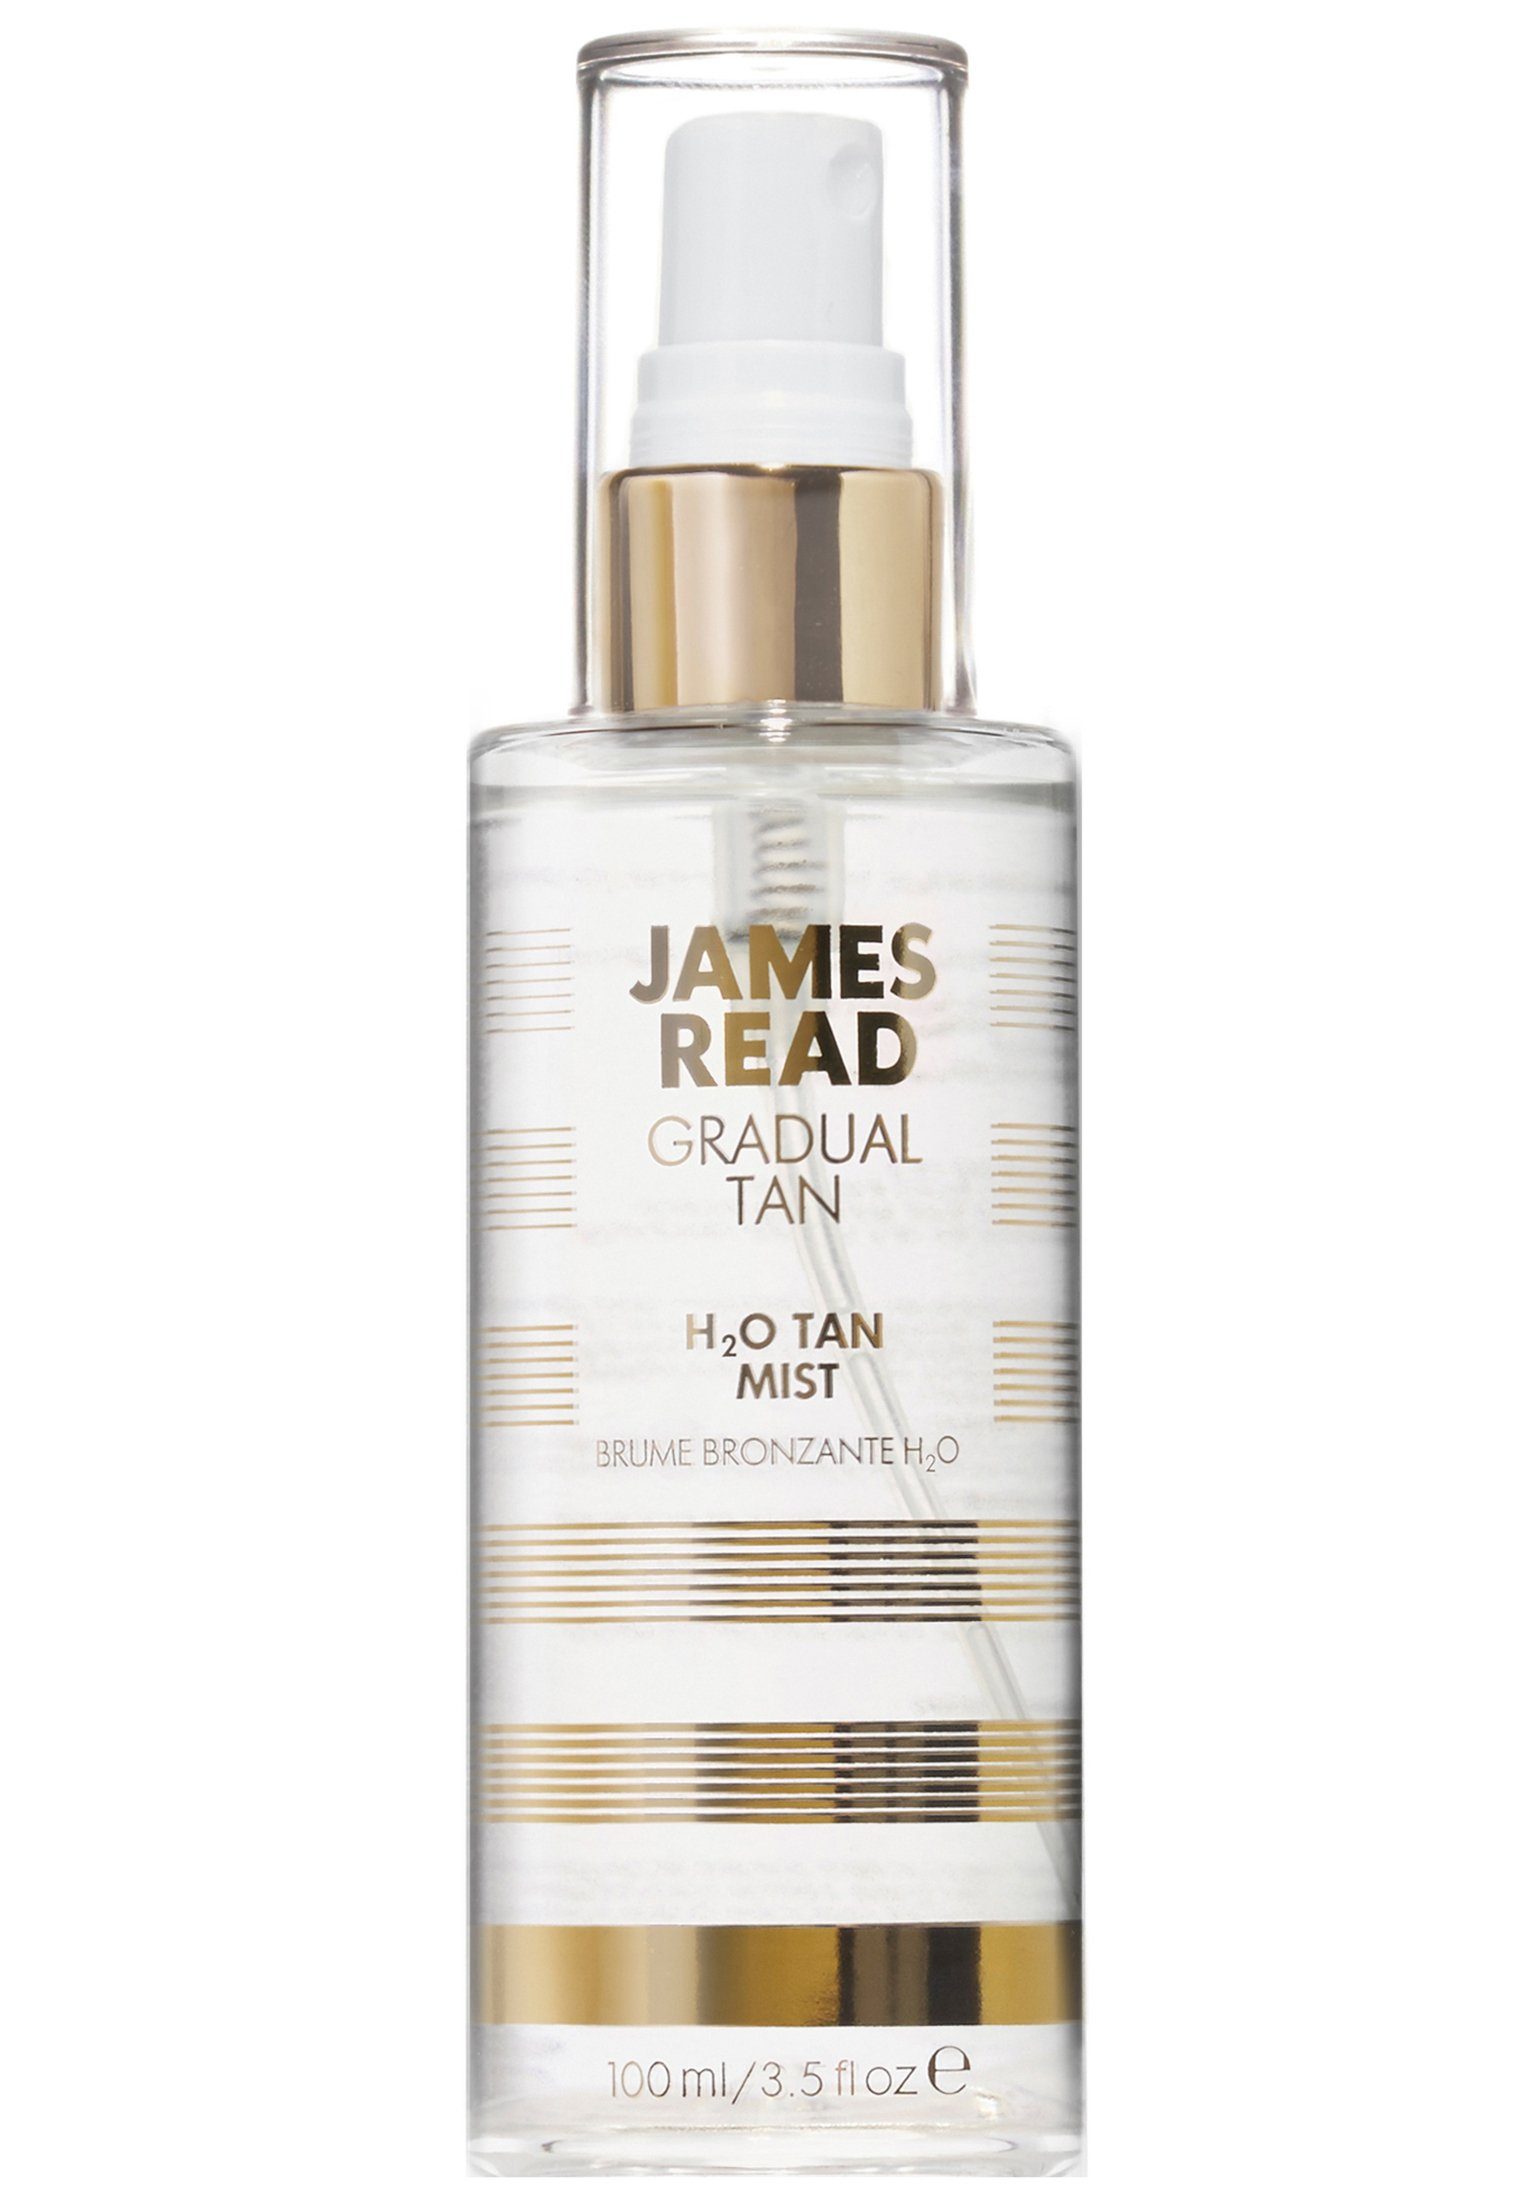 James Read Gesichts- und H2O Tan Mist Erfrischendes, Gesichtsspray Körperspray James pflegendes mit Gesichtsspray Read Bräunungseffekt